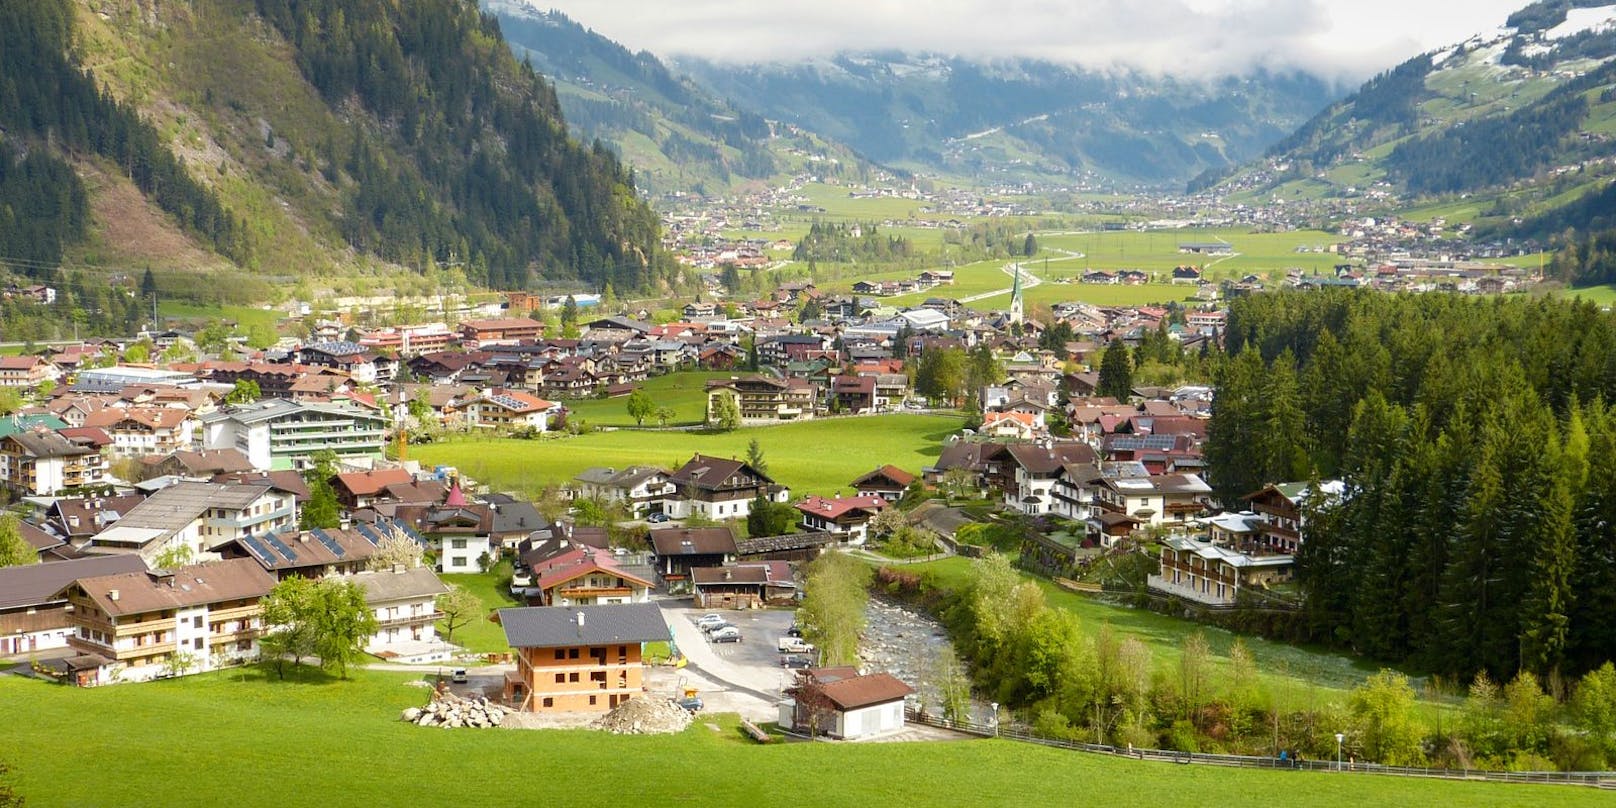 Blick auf Mayrhofen im Zillertal, wo der 84-Jährige verunglückte.